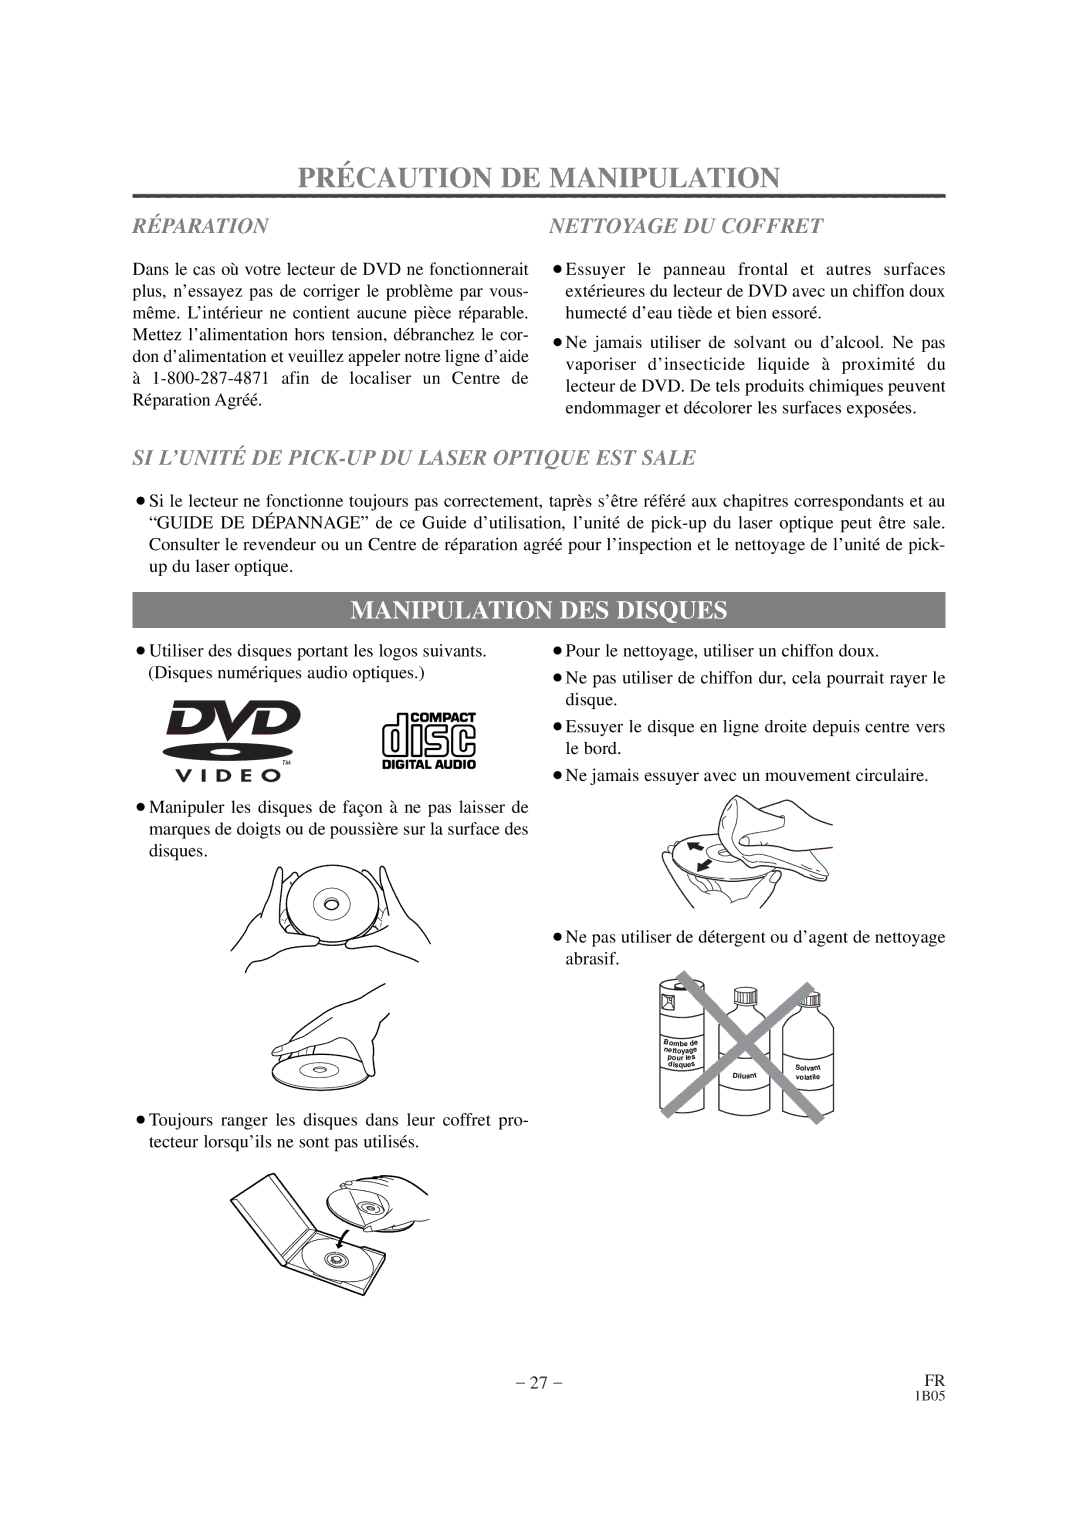 Sylvania DVL100CB owner manual PRÉ Caution DE Manipulation, Manipulation DES Disques 